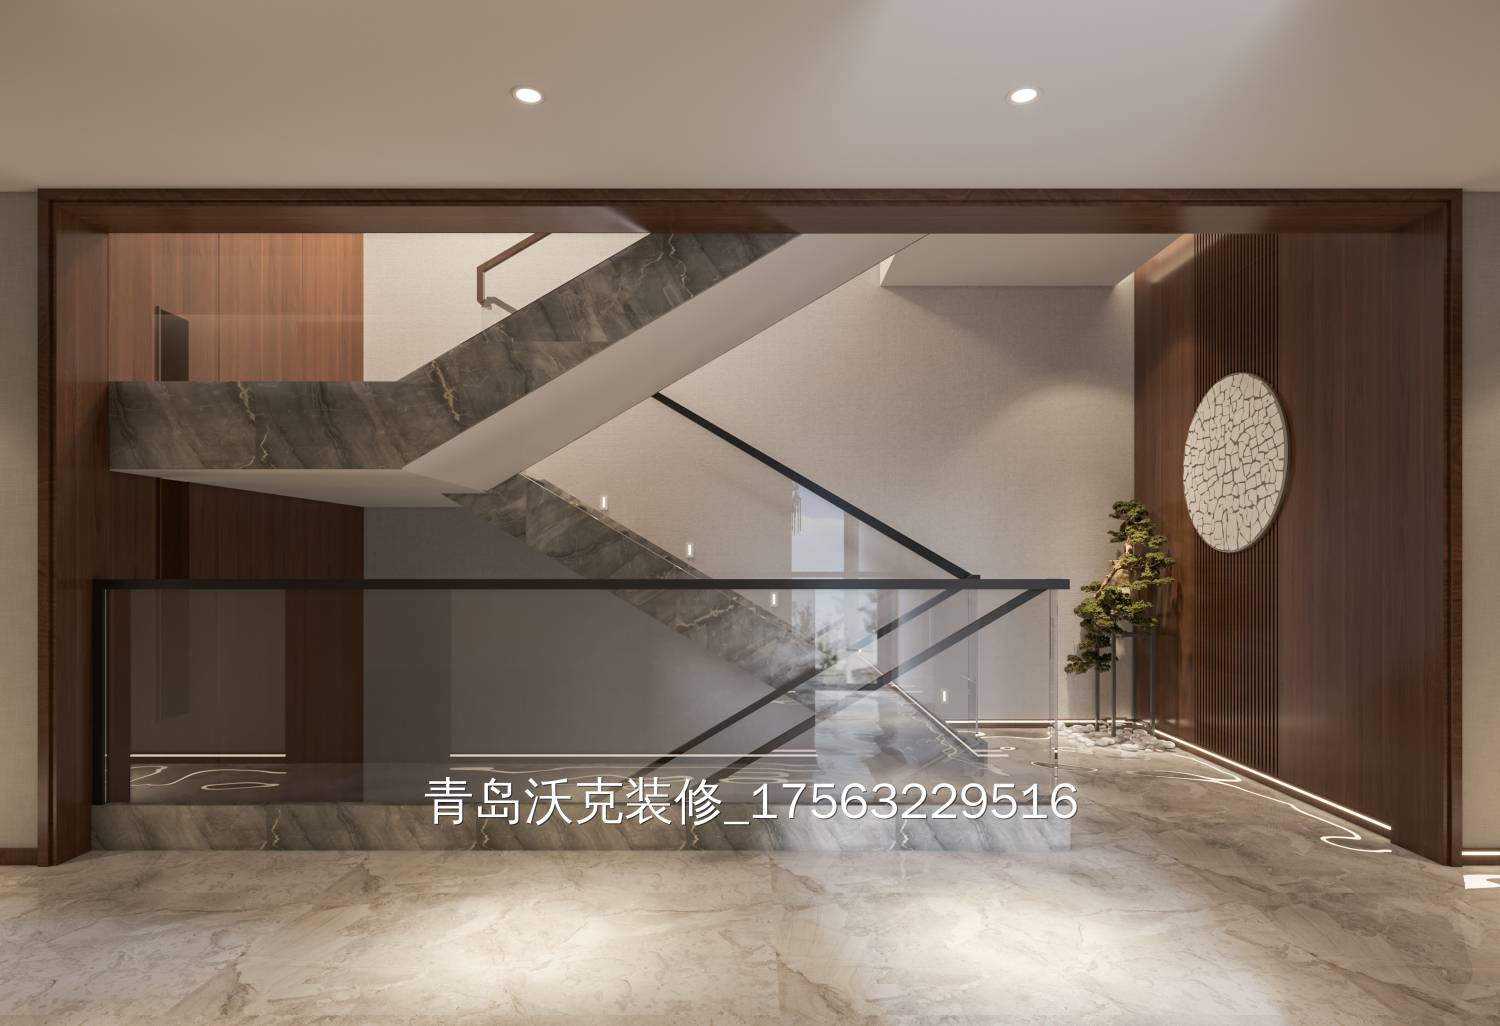 290多平方米新中式别墅整装装修设计图片